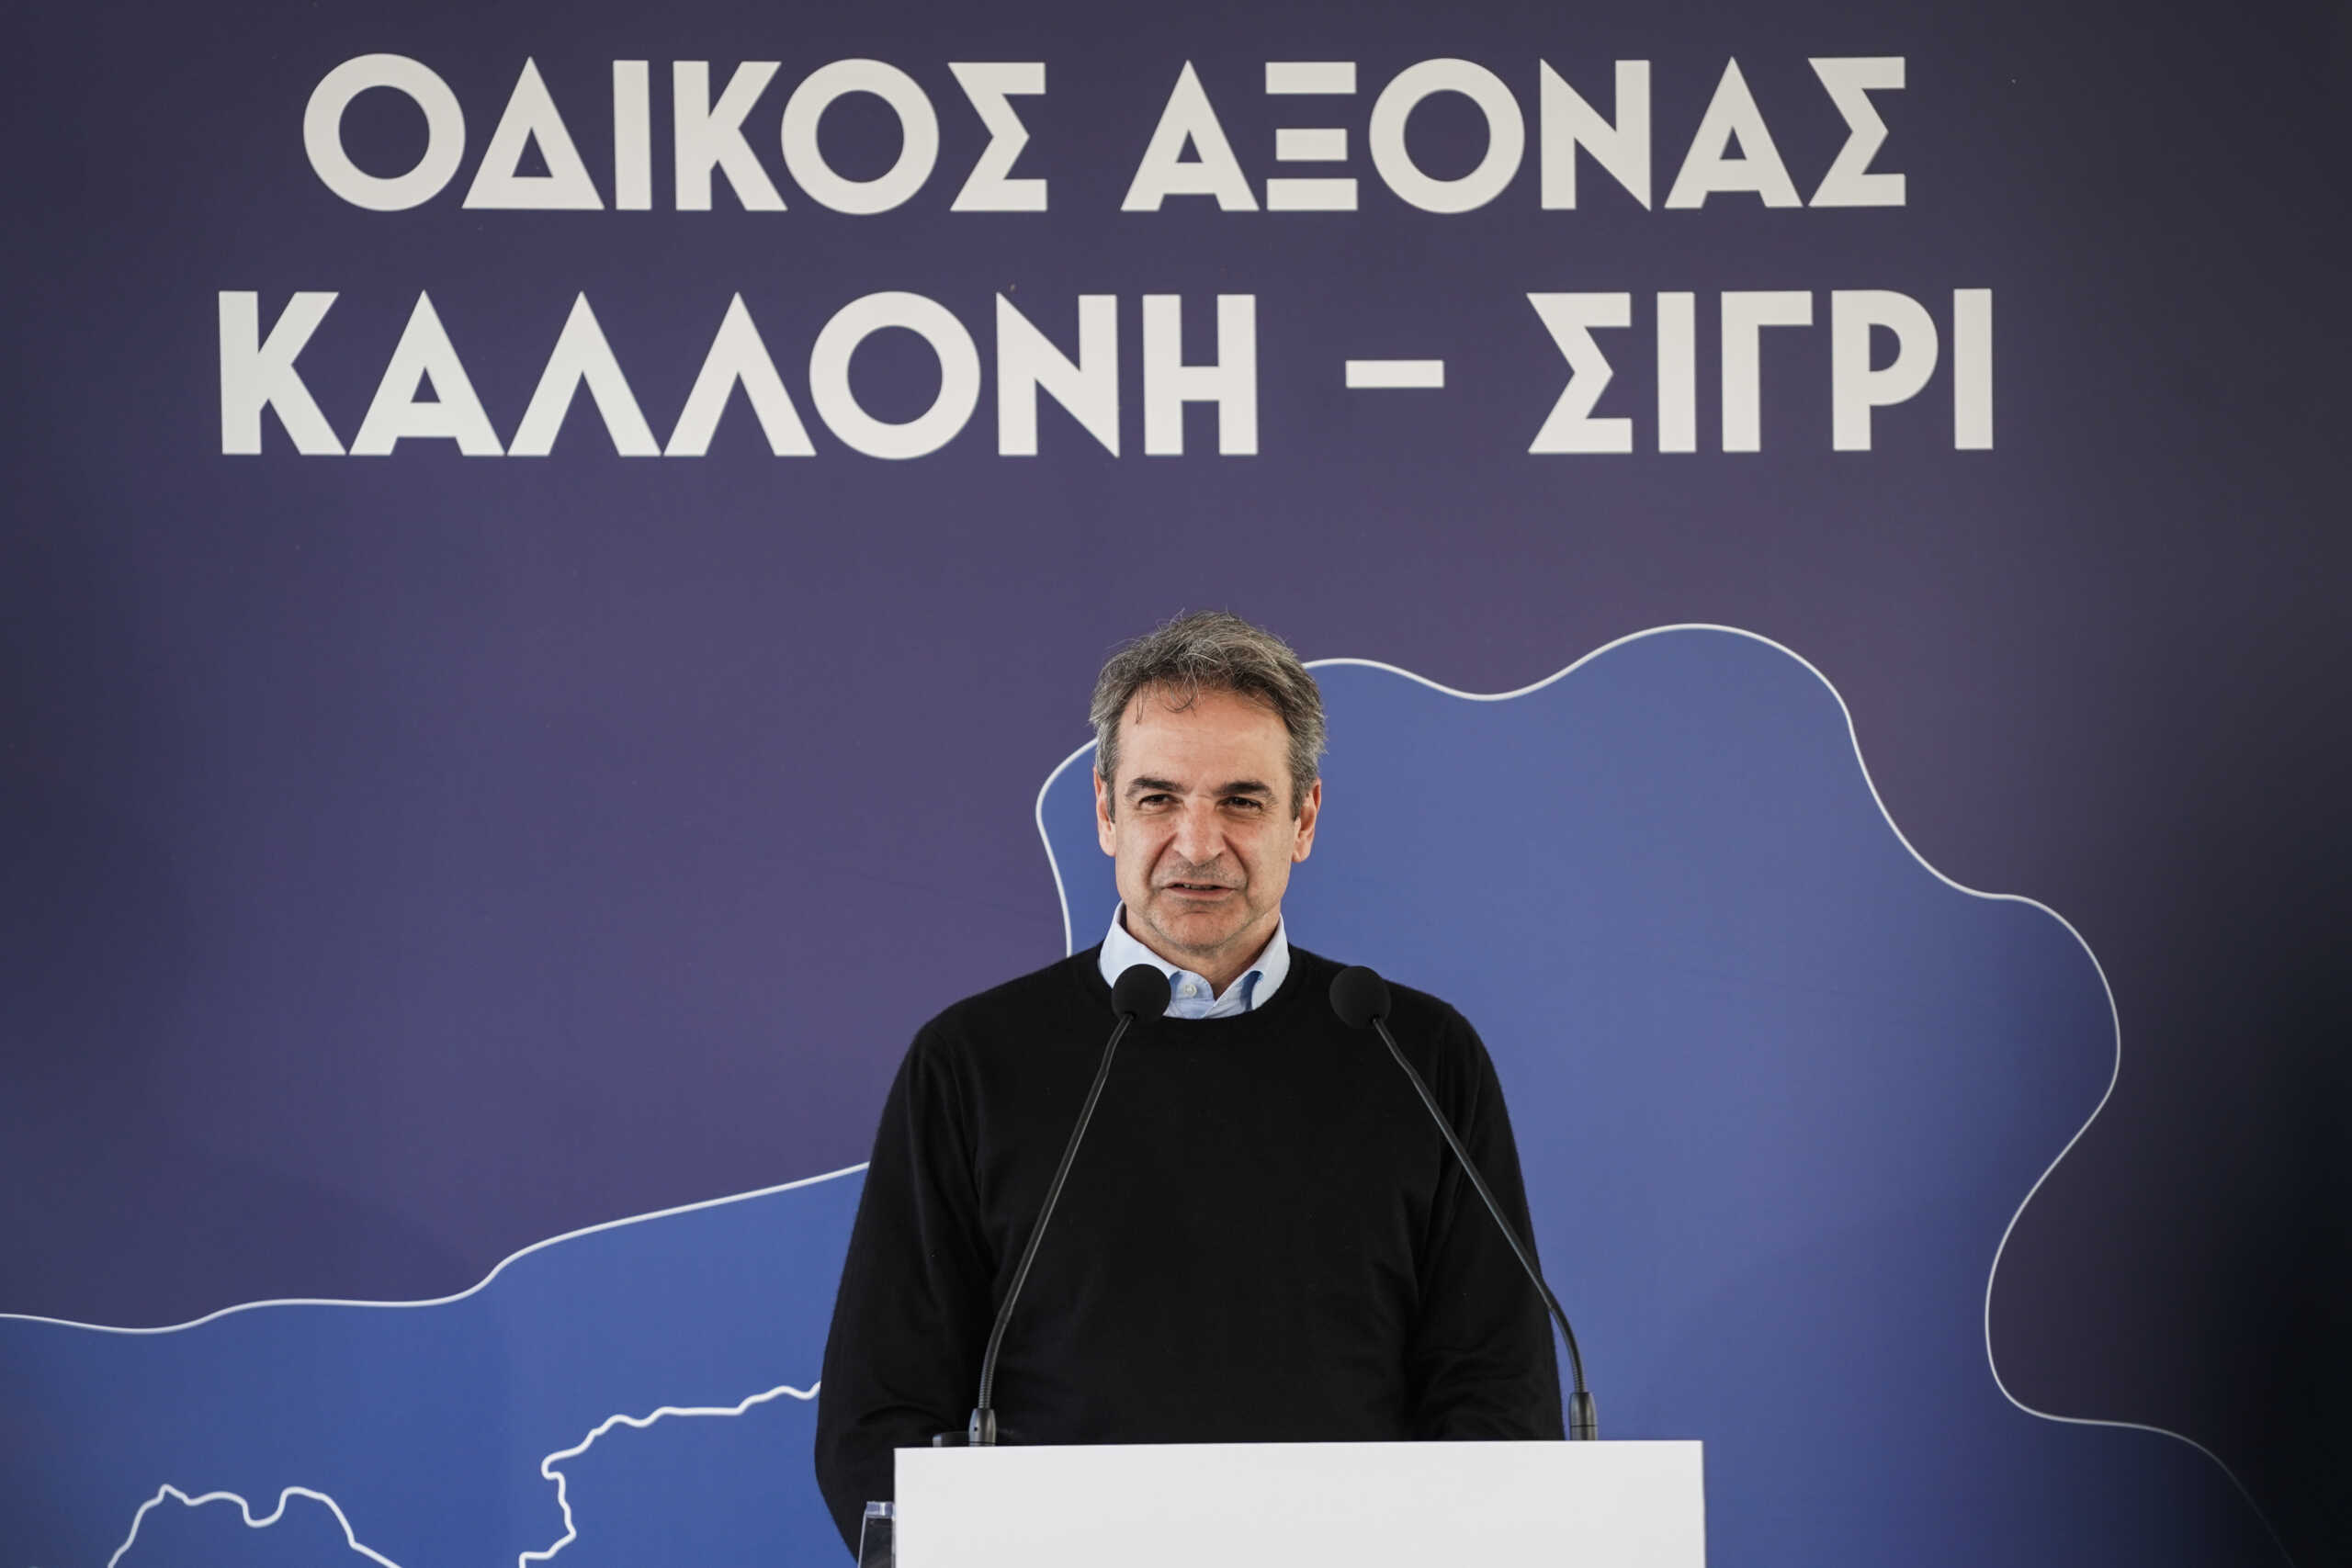 Μητσοτάκης από Λέσβο: «Η προσέγγιση Ελλάδας και Τουρκίας έχει απτά πραγματικά αποτελέσματα για τα νησιά μας»